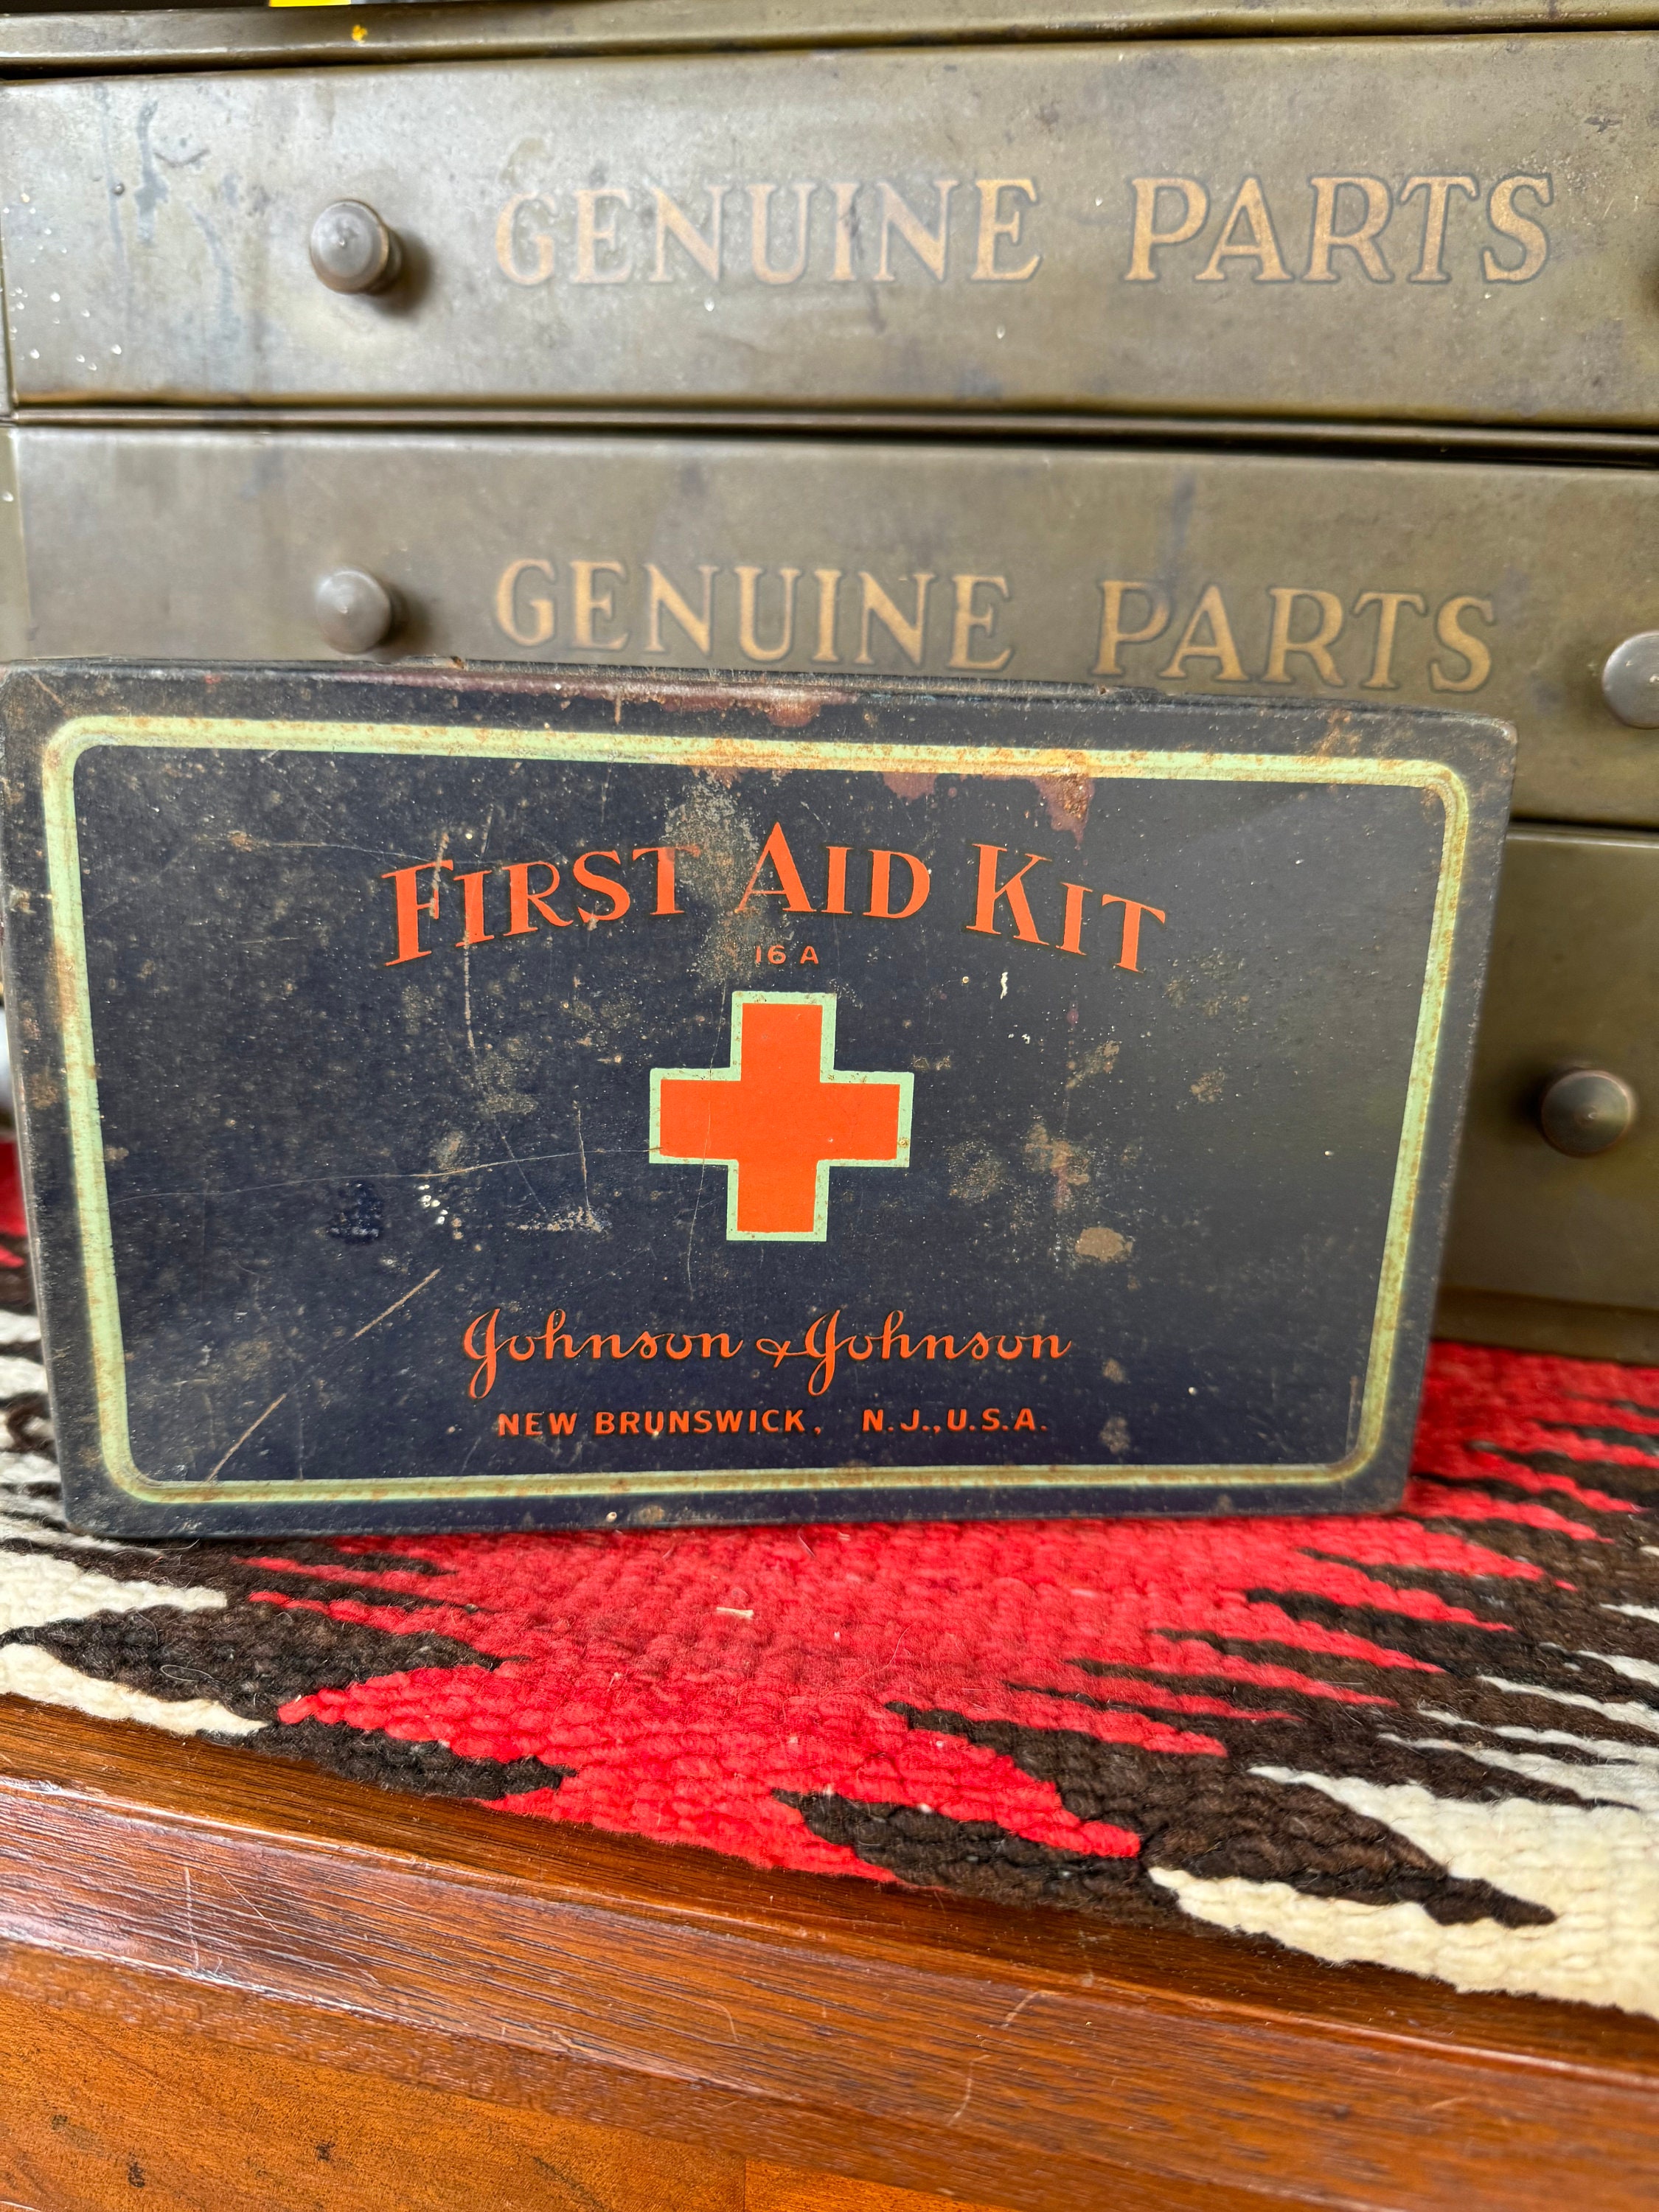 Botiquín de primeros auxilios grande color blanco, caja metálica para  emergencias, botiquín de emergencias vacío, diseñado